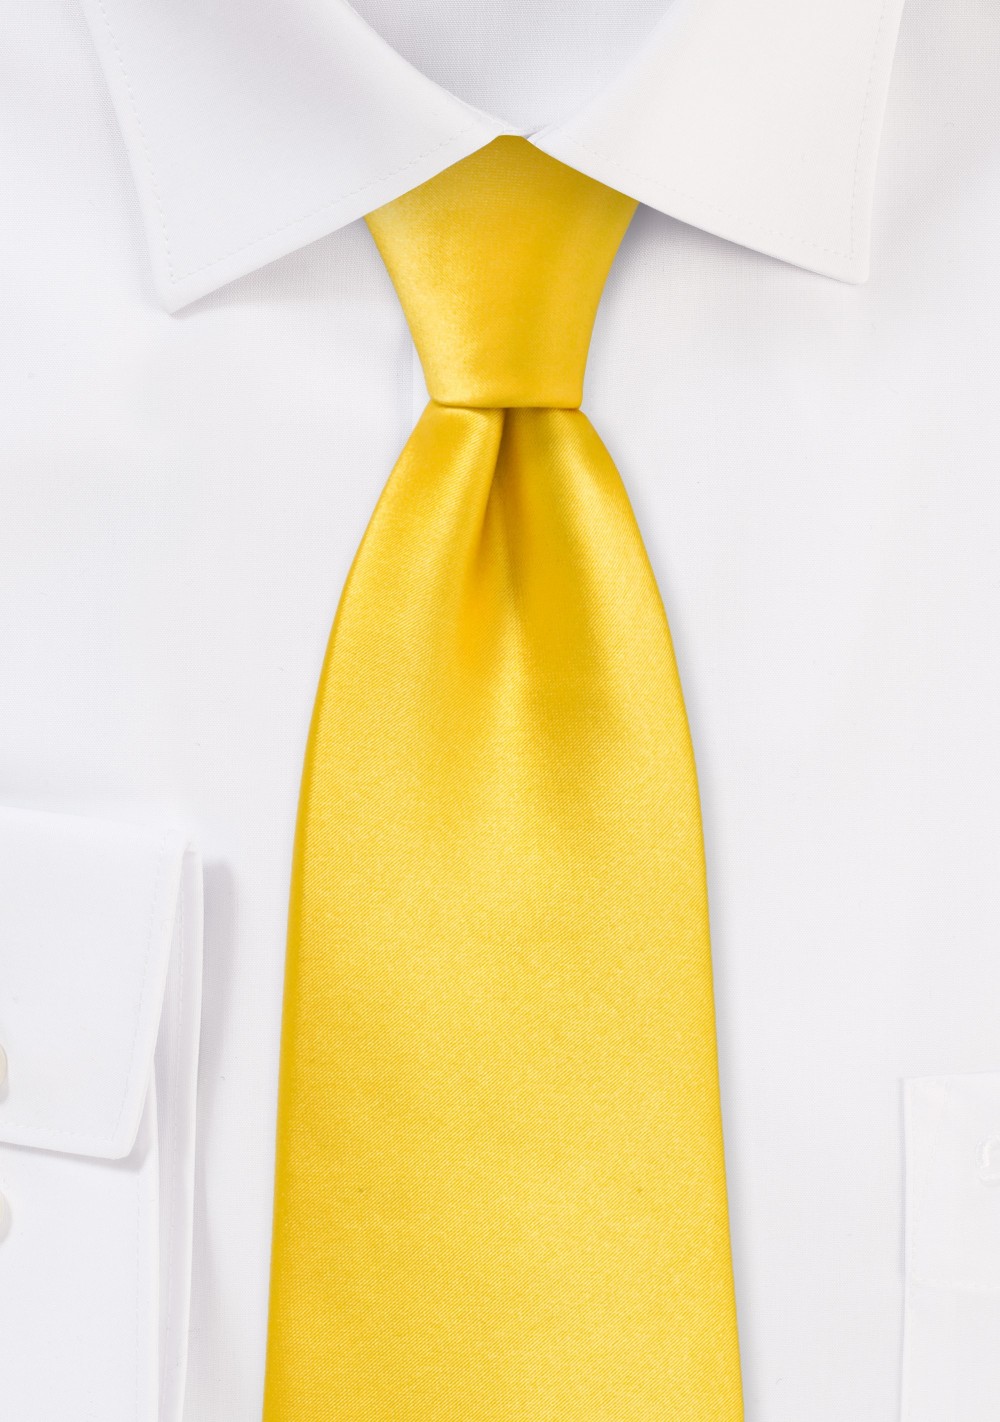 Sunbeam Yellow Necktie in XL Length